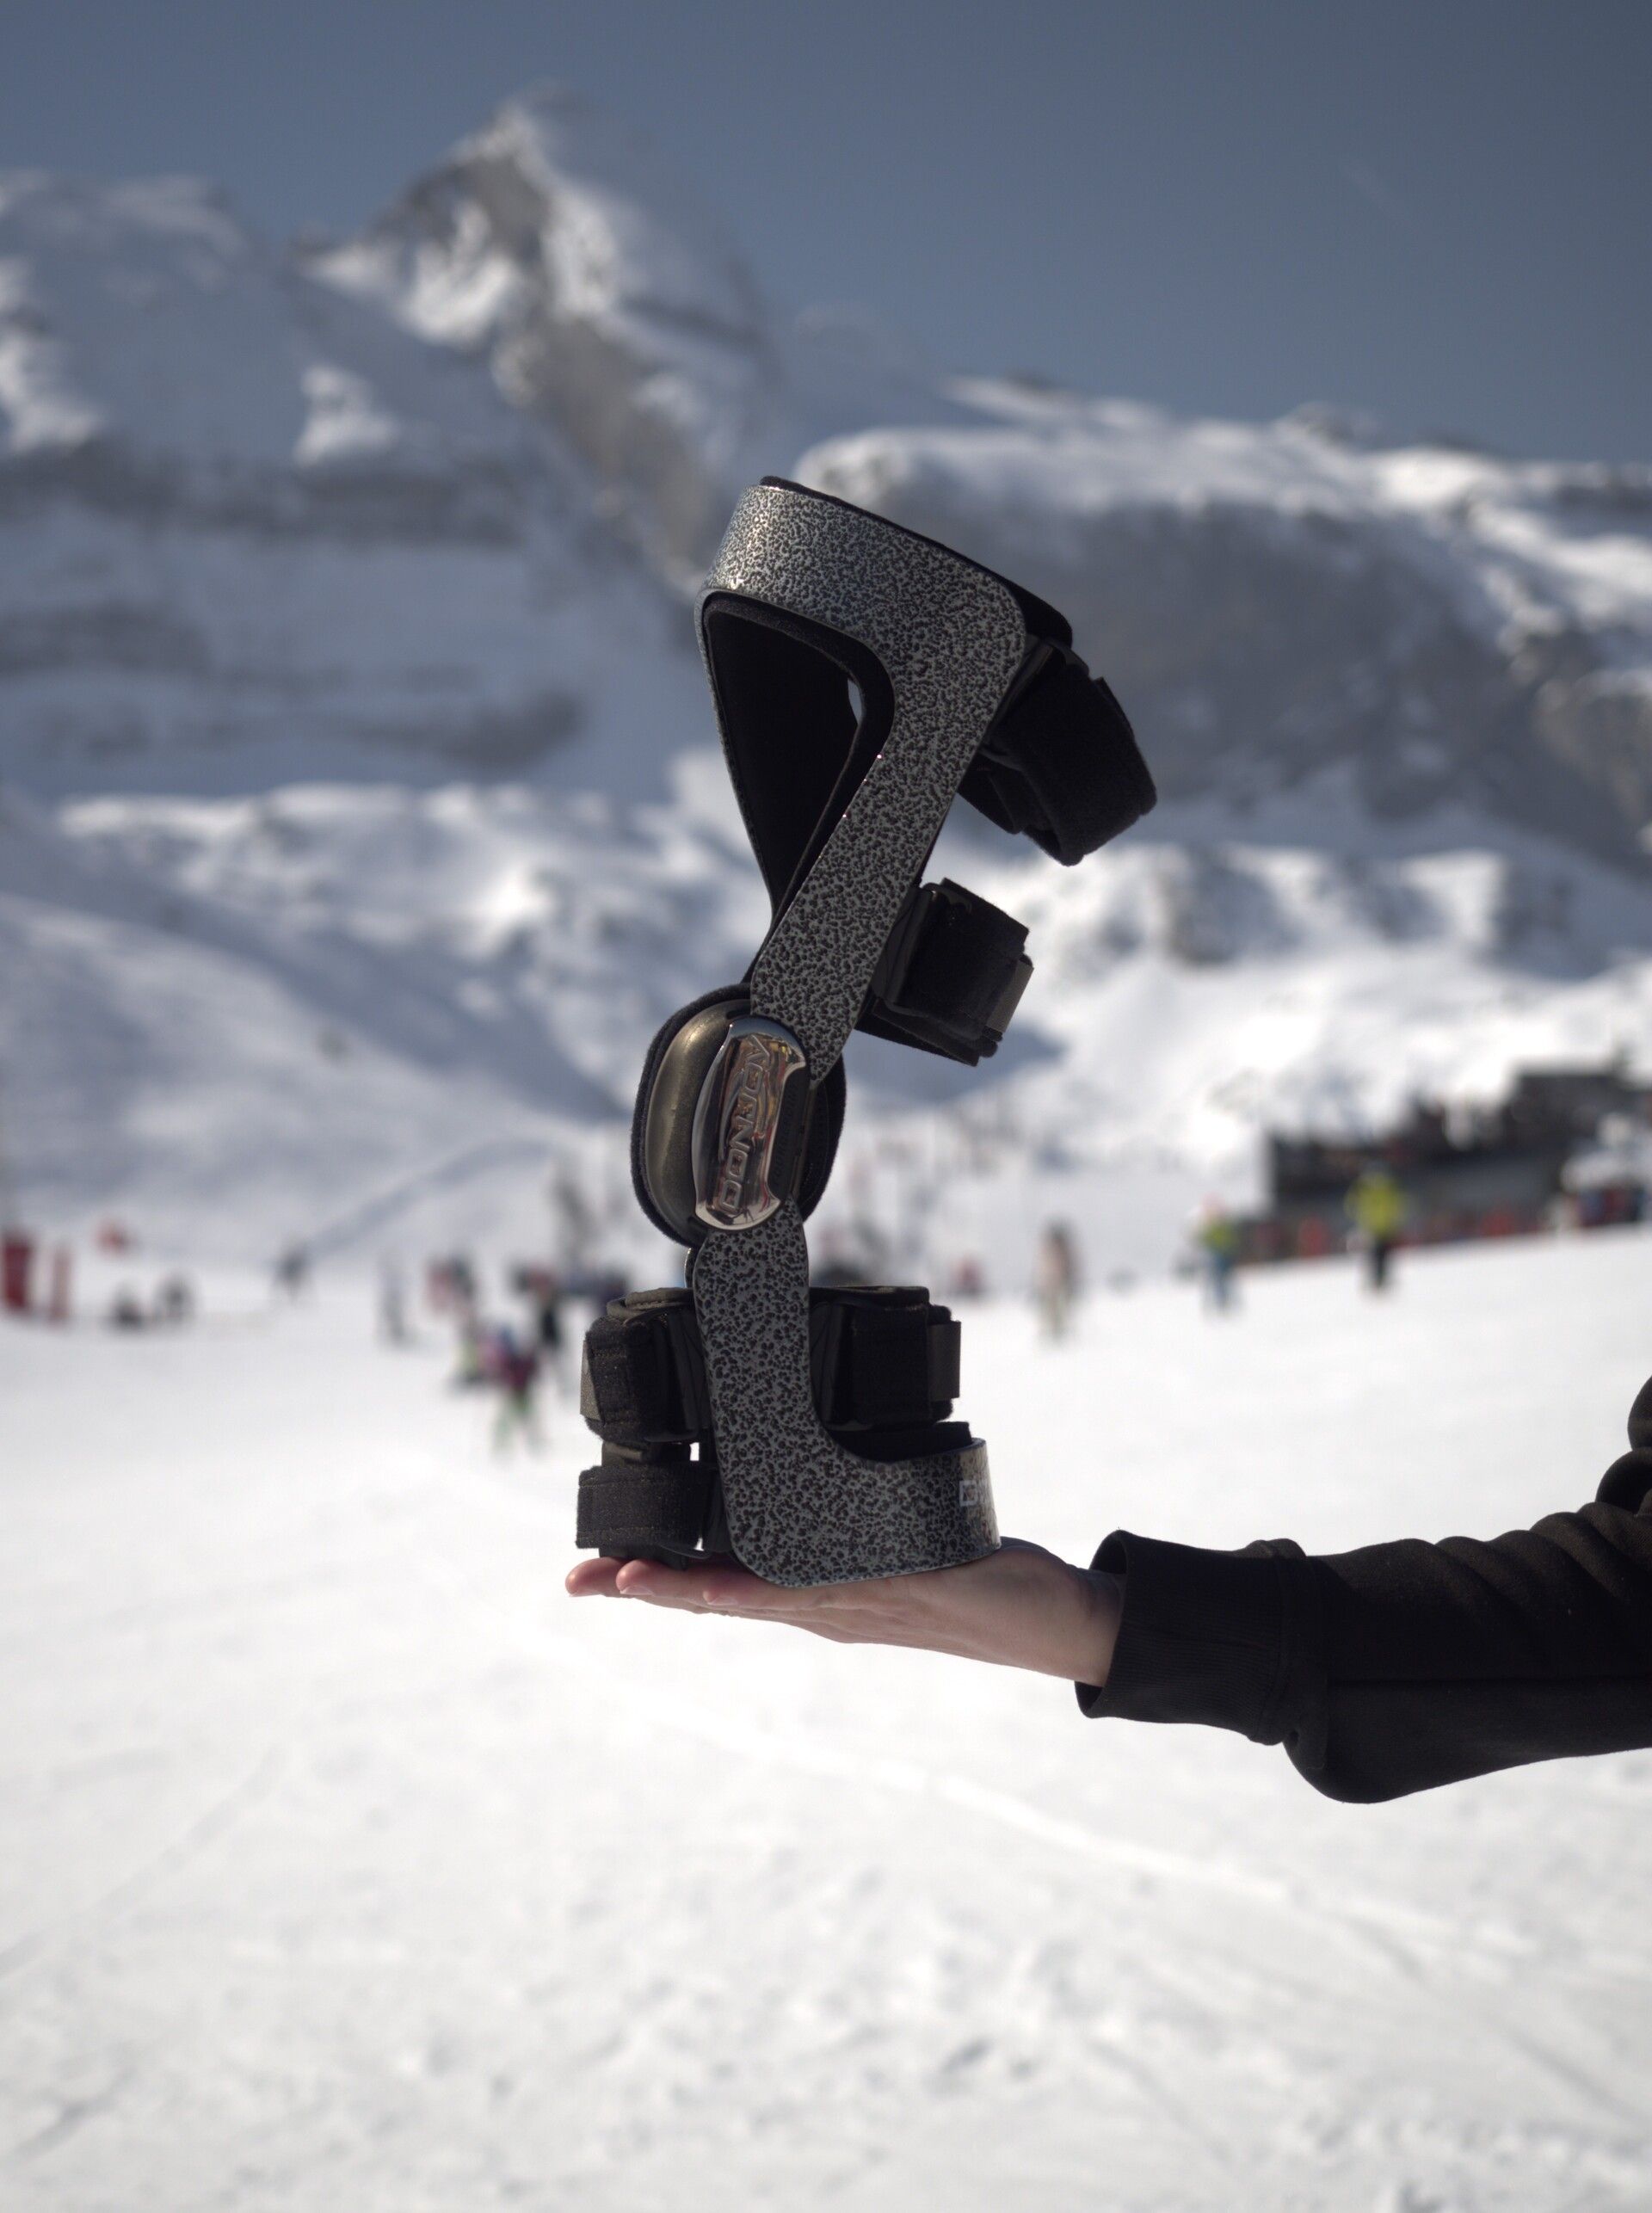 Test de rodilleras específicas para esquí y snowboard en Candanchú